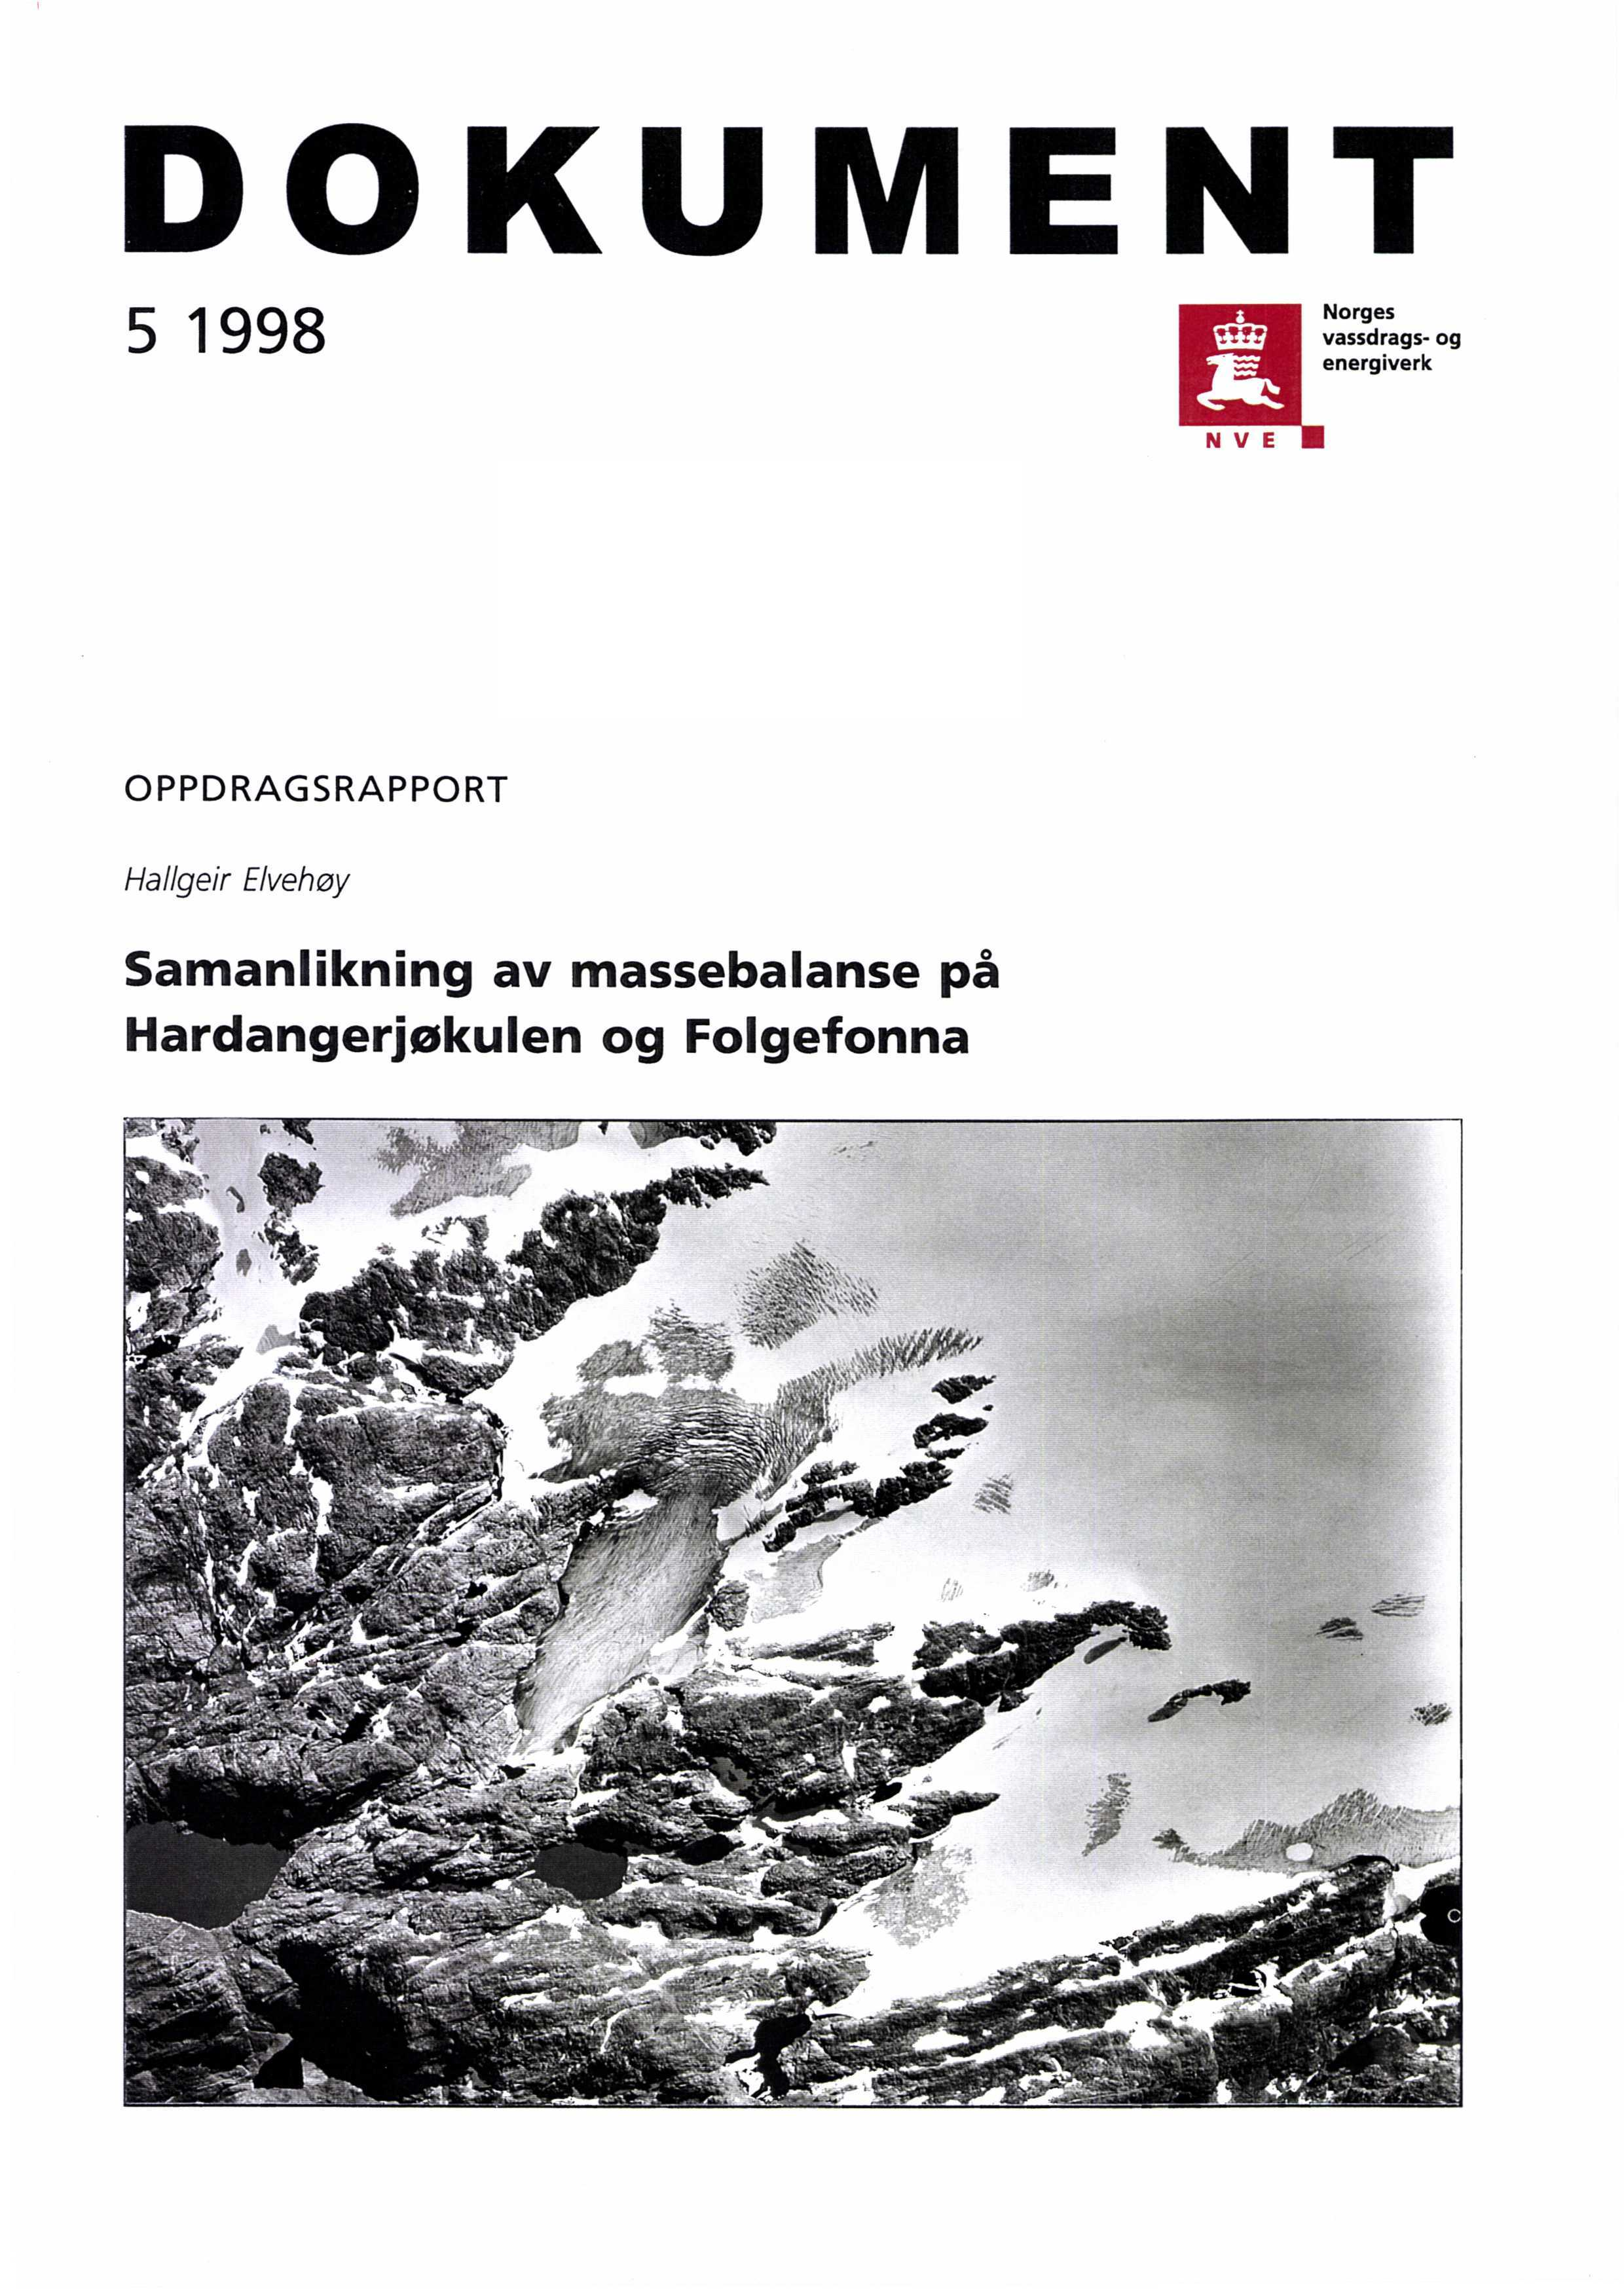 DOKUMENT Norges 5 1998 vassdrags- og energiverk NVE OPPDRAGSRAPPORT Hallgeir